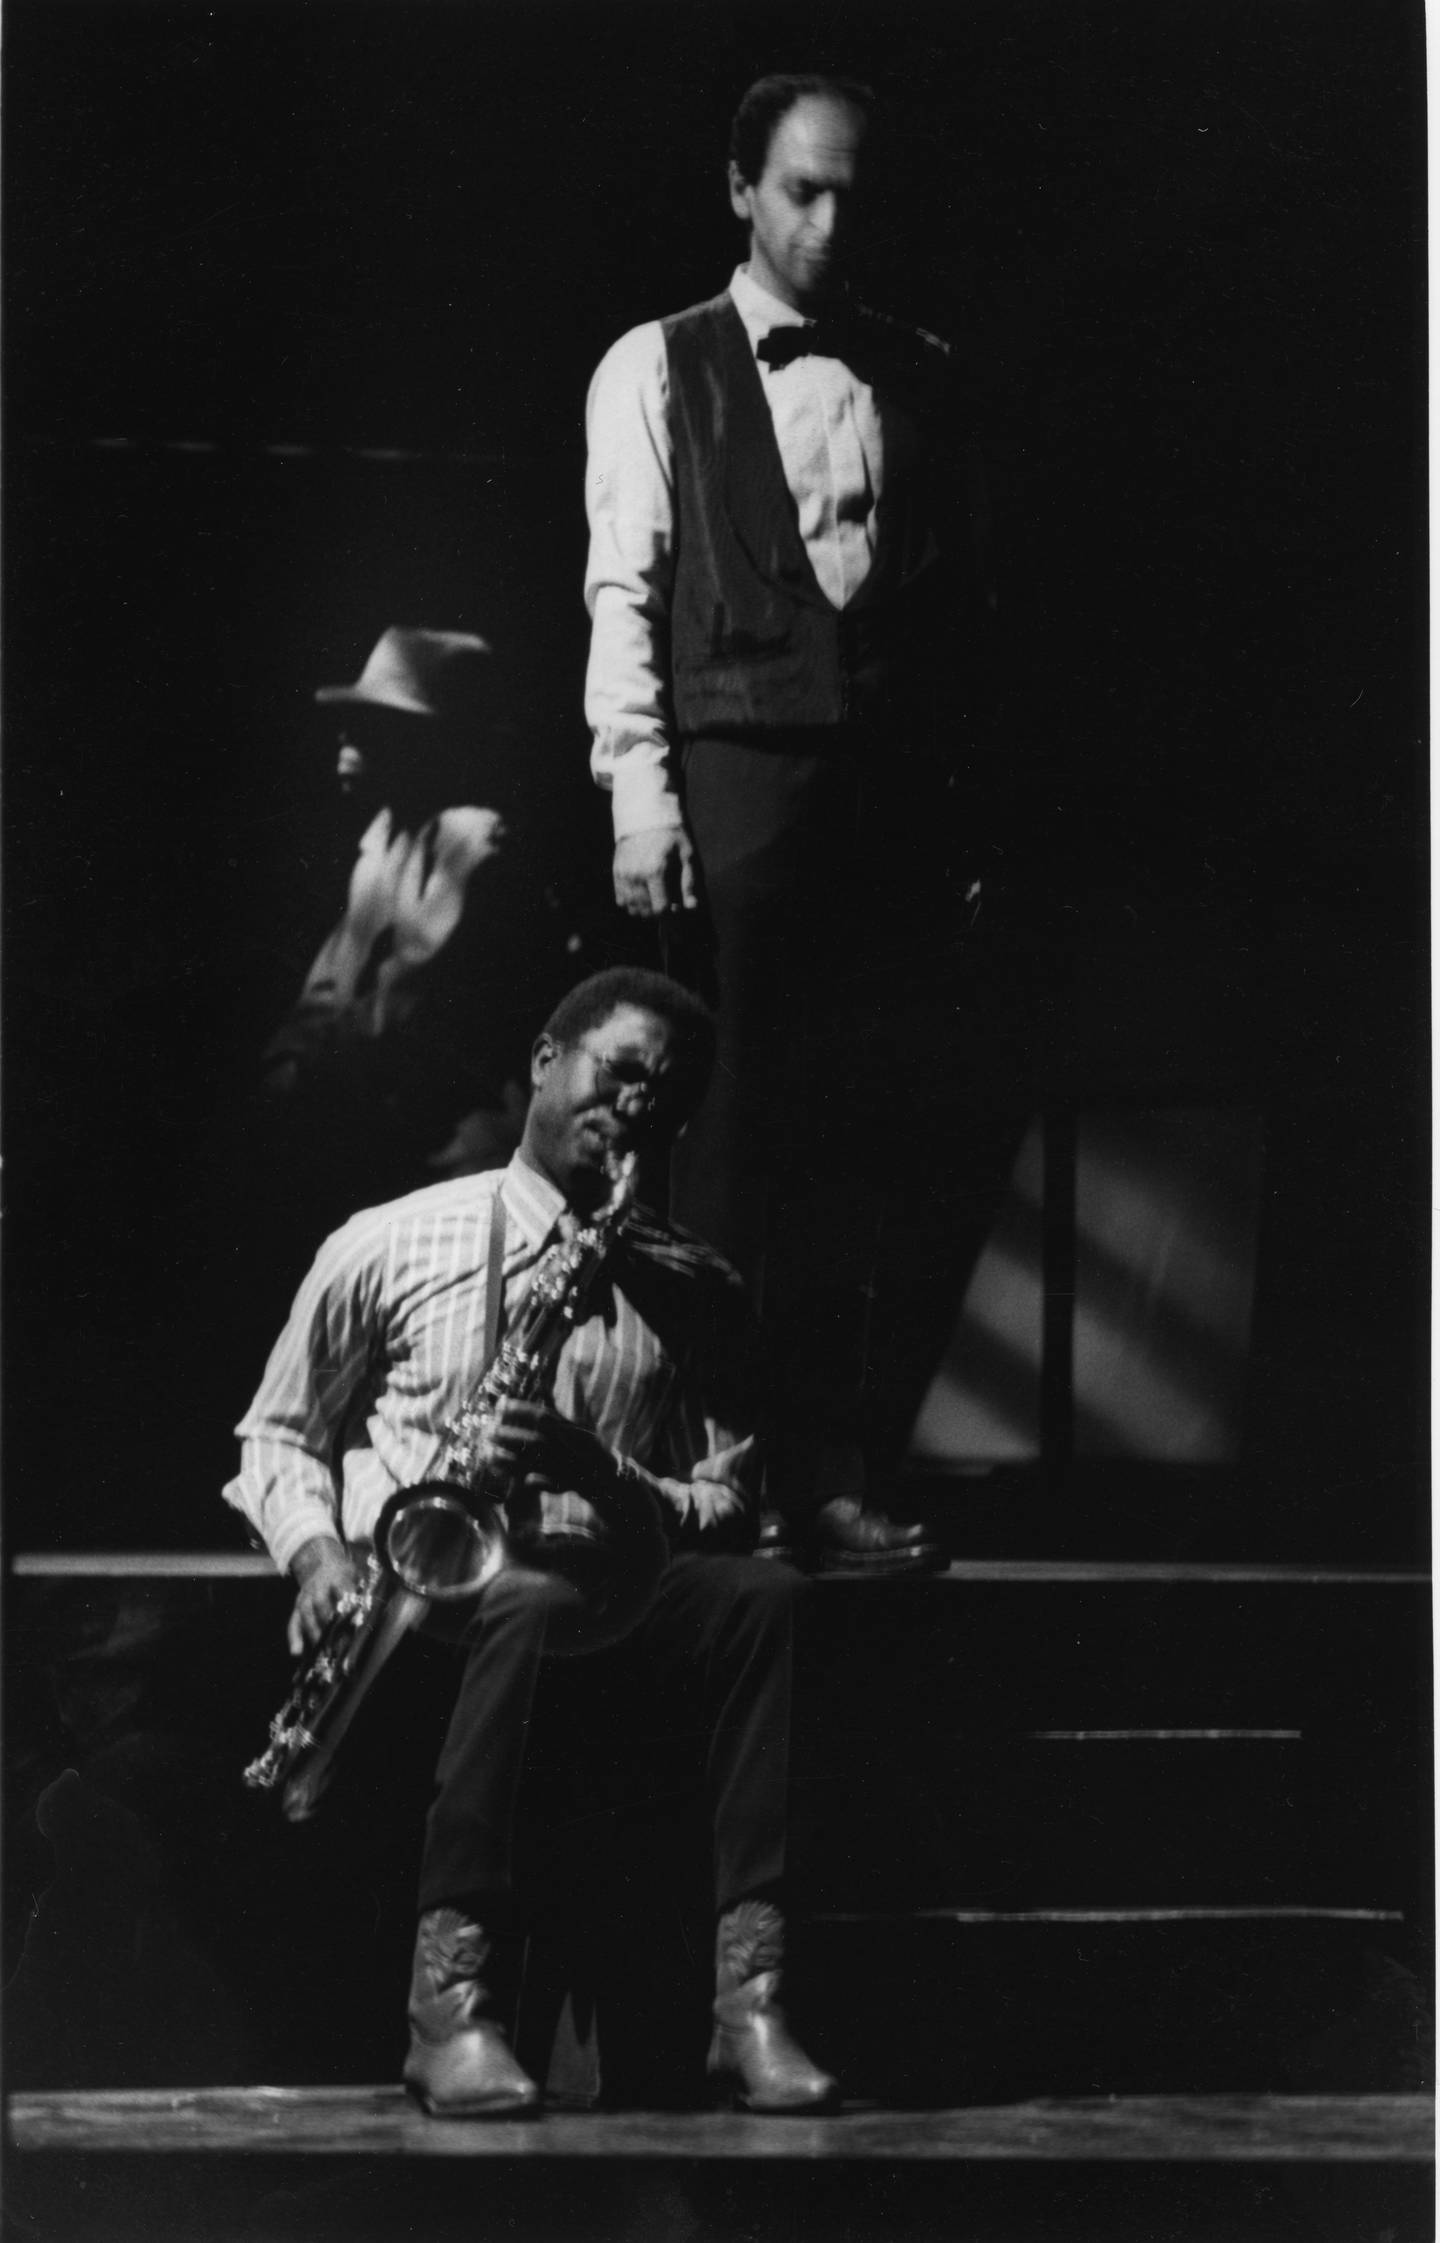 En mann sitter og spiller saksofon. Bak ham står en mann og ser ned. I bakgrunnen synes en mann med hatt i profil.